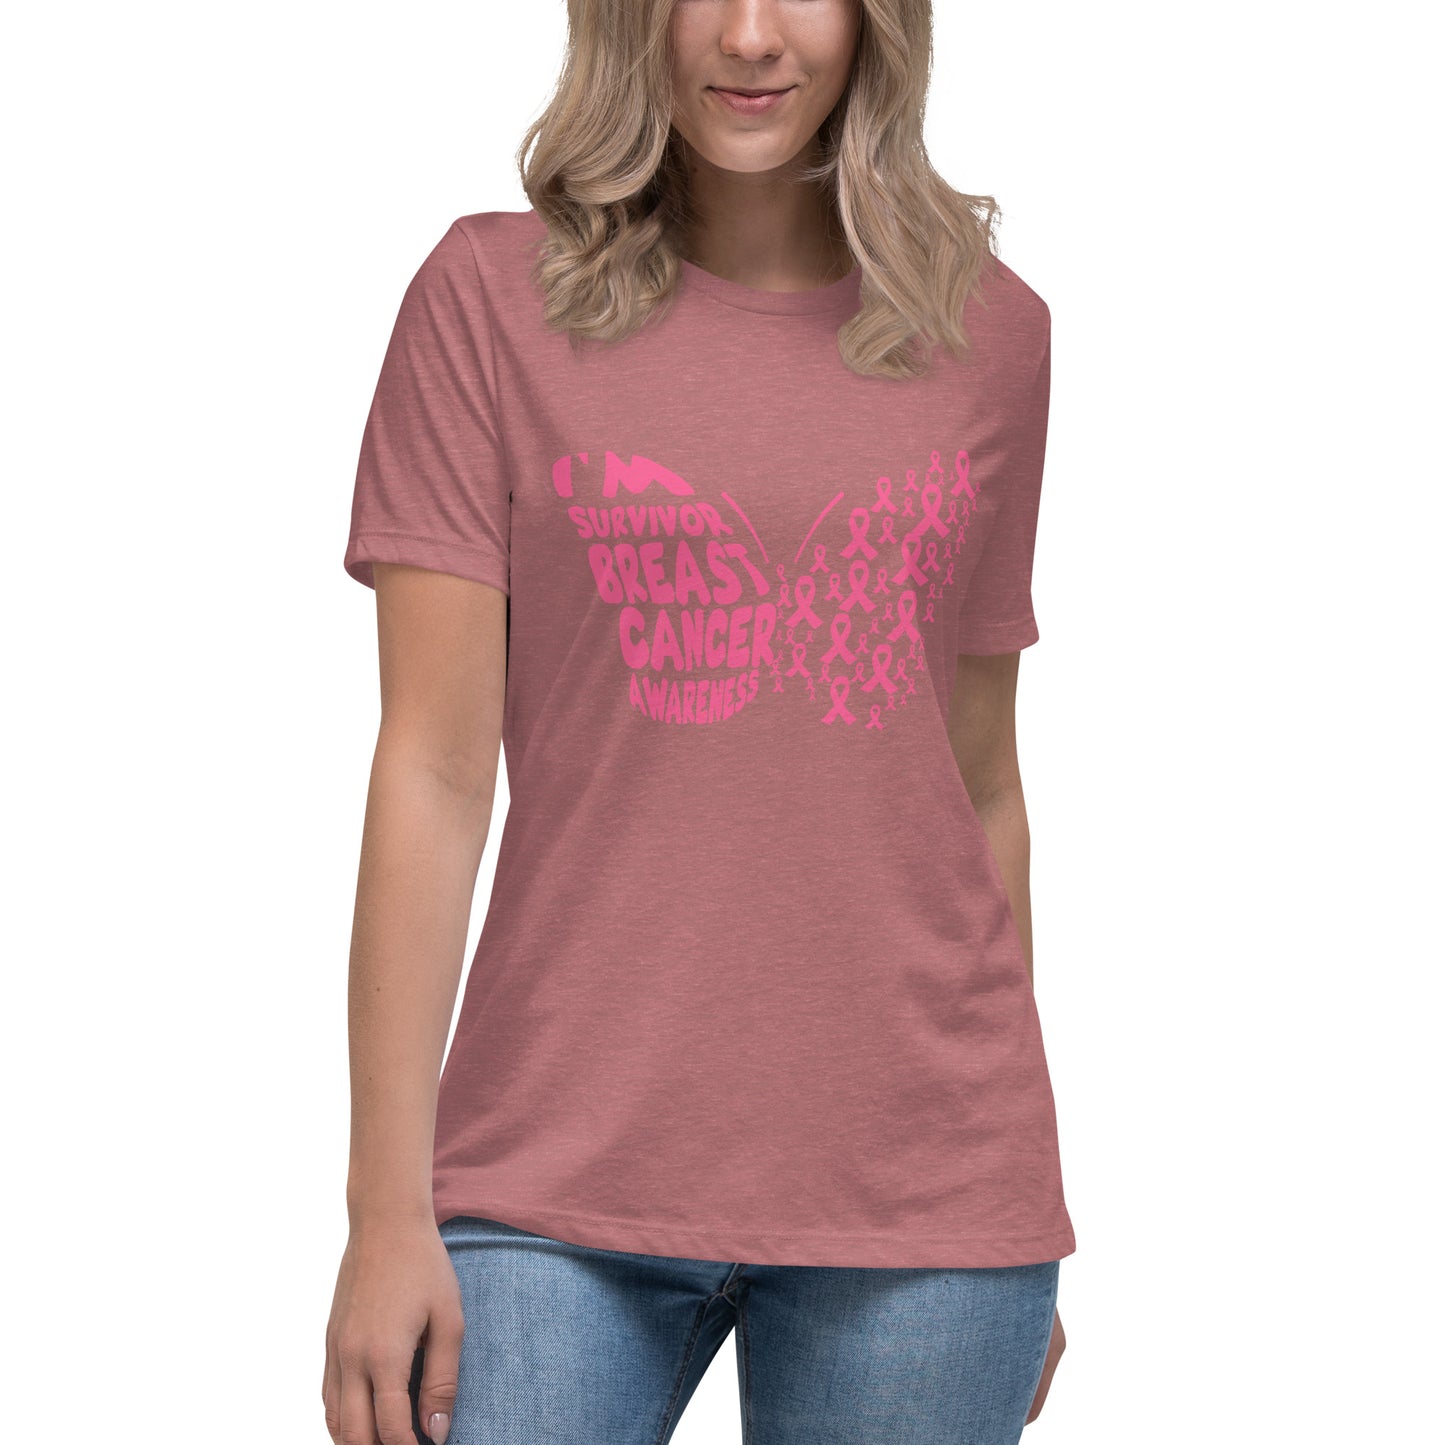 Breast Cancer Survivor Butterfly Women's Tshirt